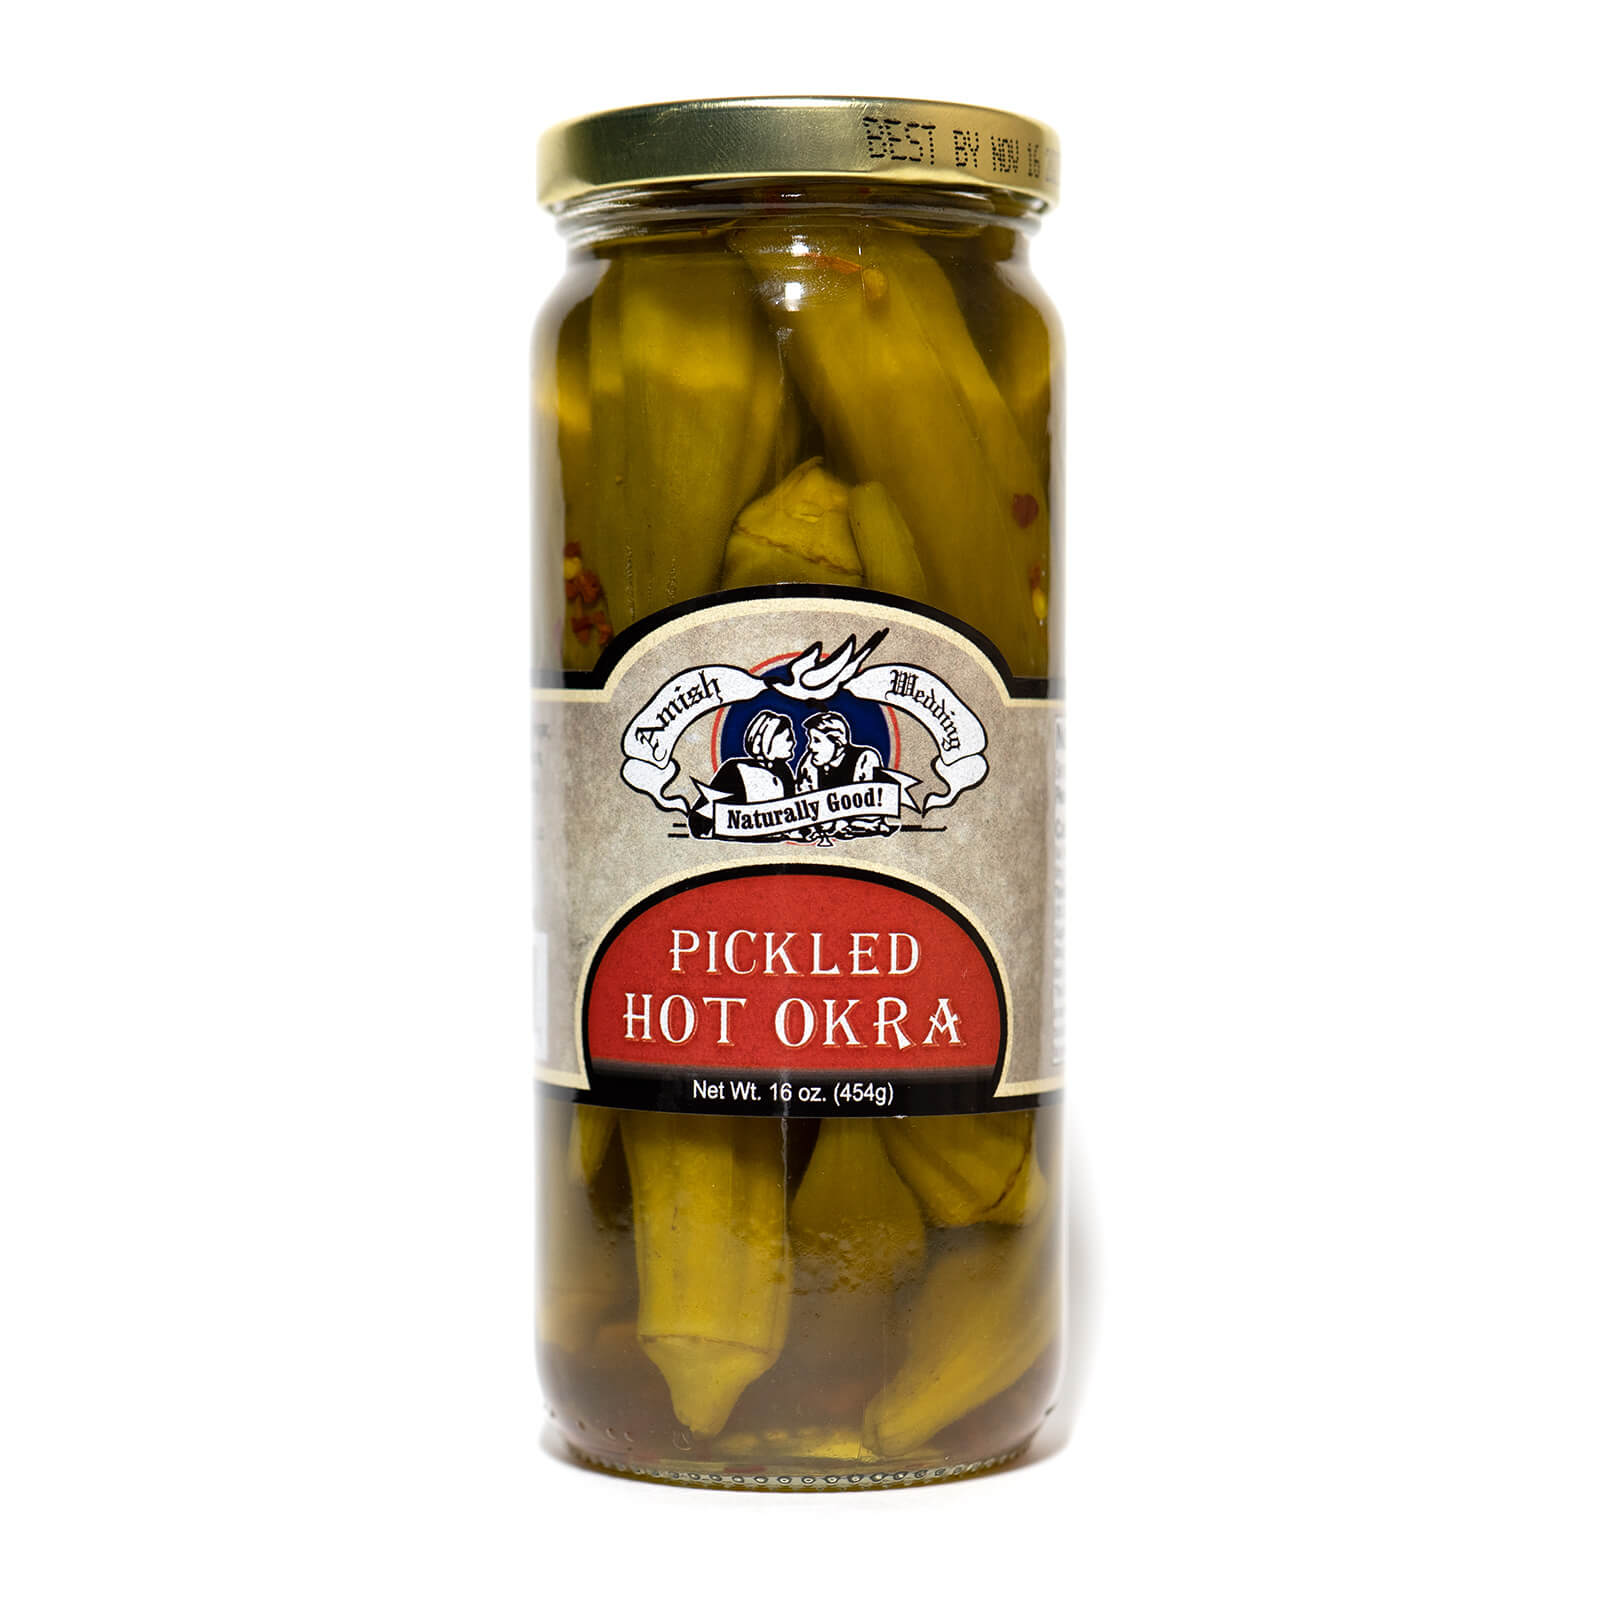 Pickled Hot Okra - Amish Wedding - Single Jar - Front Label